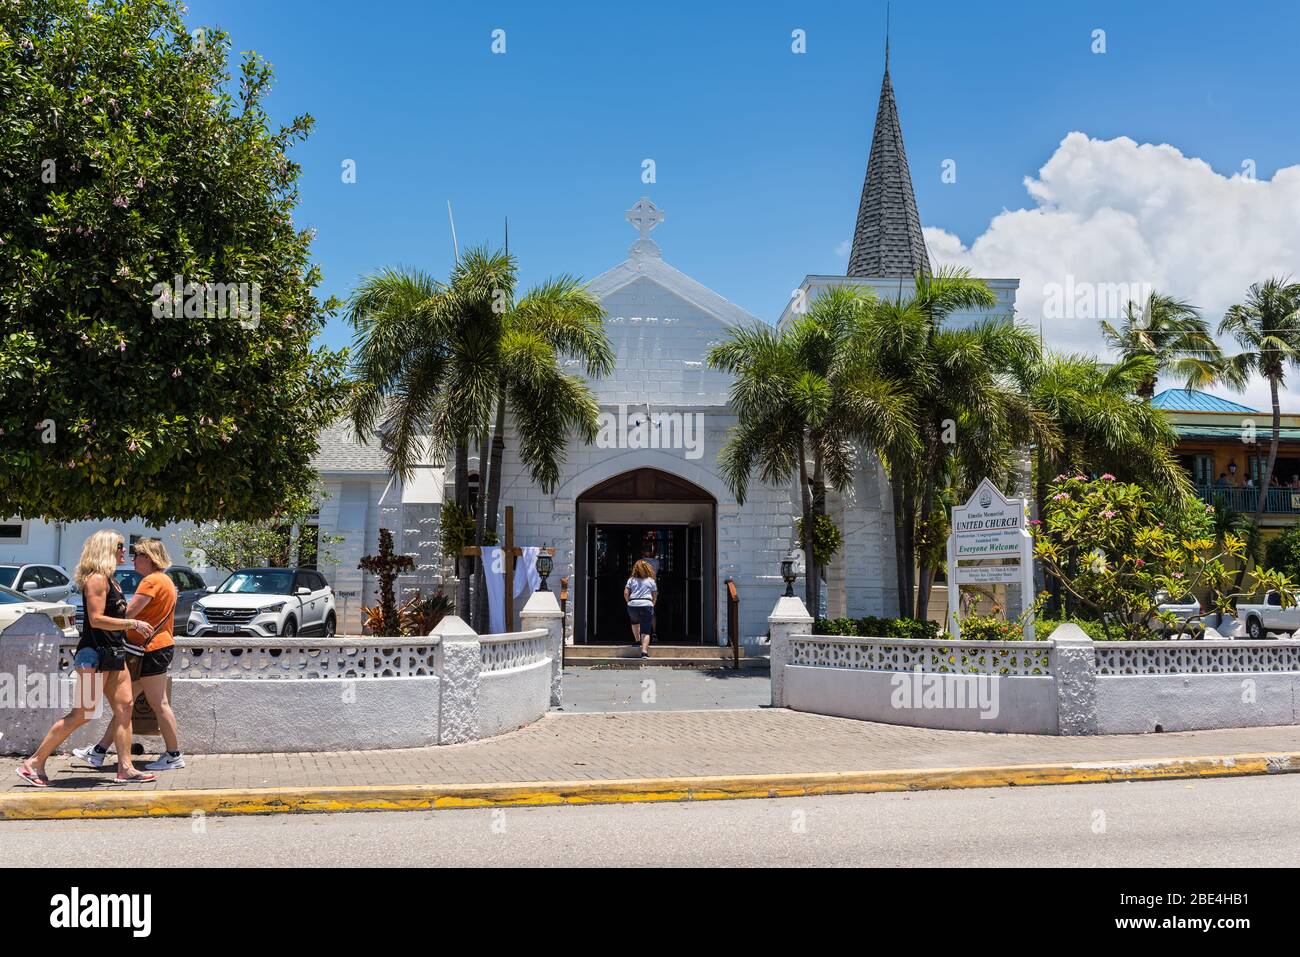 George Town, Grand Cayman Island, Royaume-Uni - 23 avril 2019 : l'église unie Elmslie Memorial dans le centre-ville de George Town, Grand Cayman, îles Caïmanes, Briti Banque D'Images